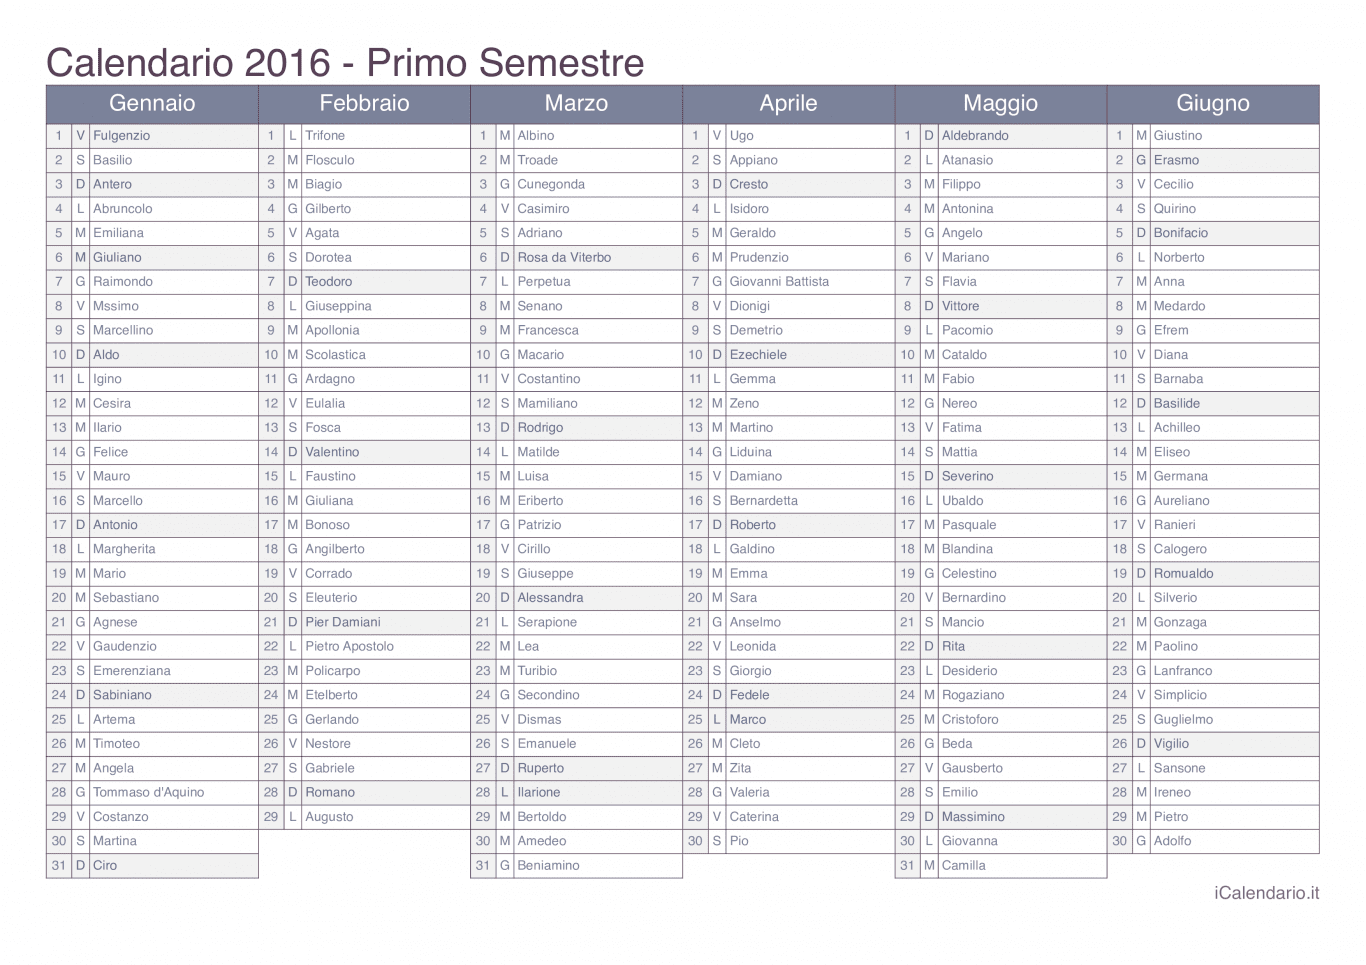 Calendario semestrale 2016 con santi e festivi - Office